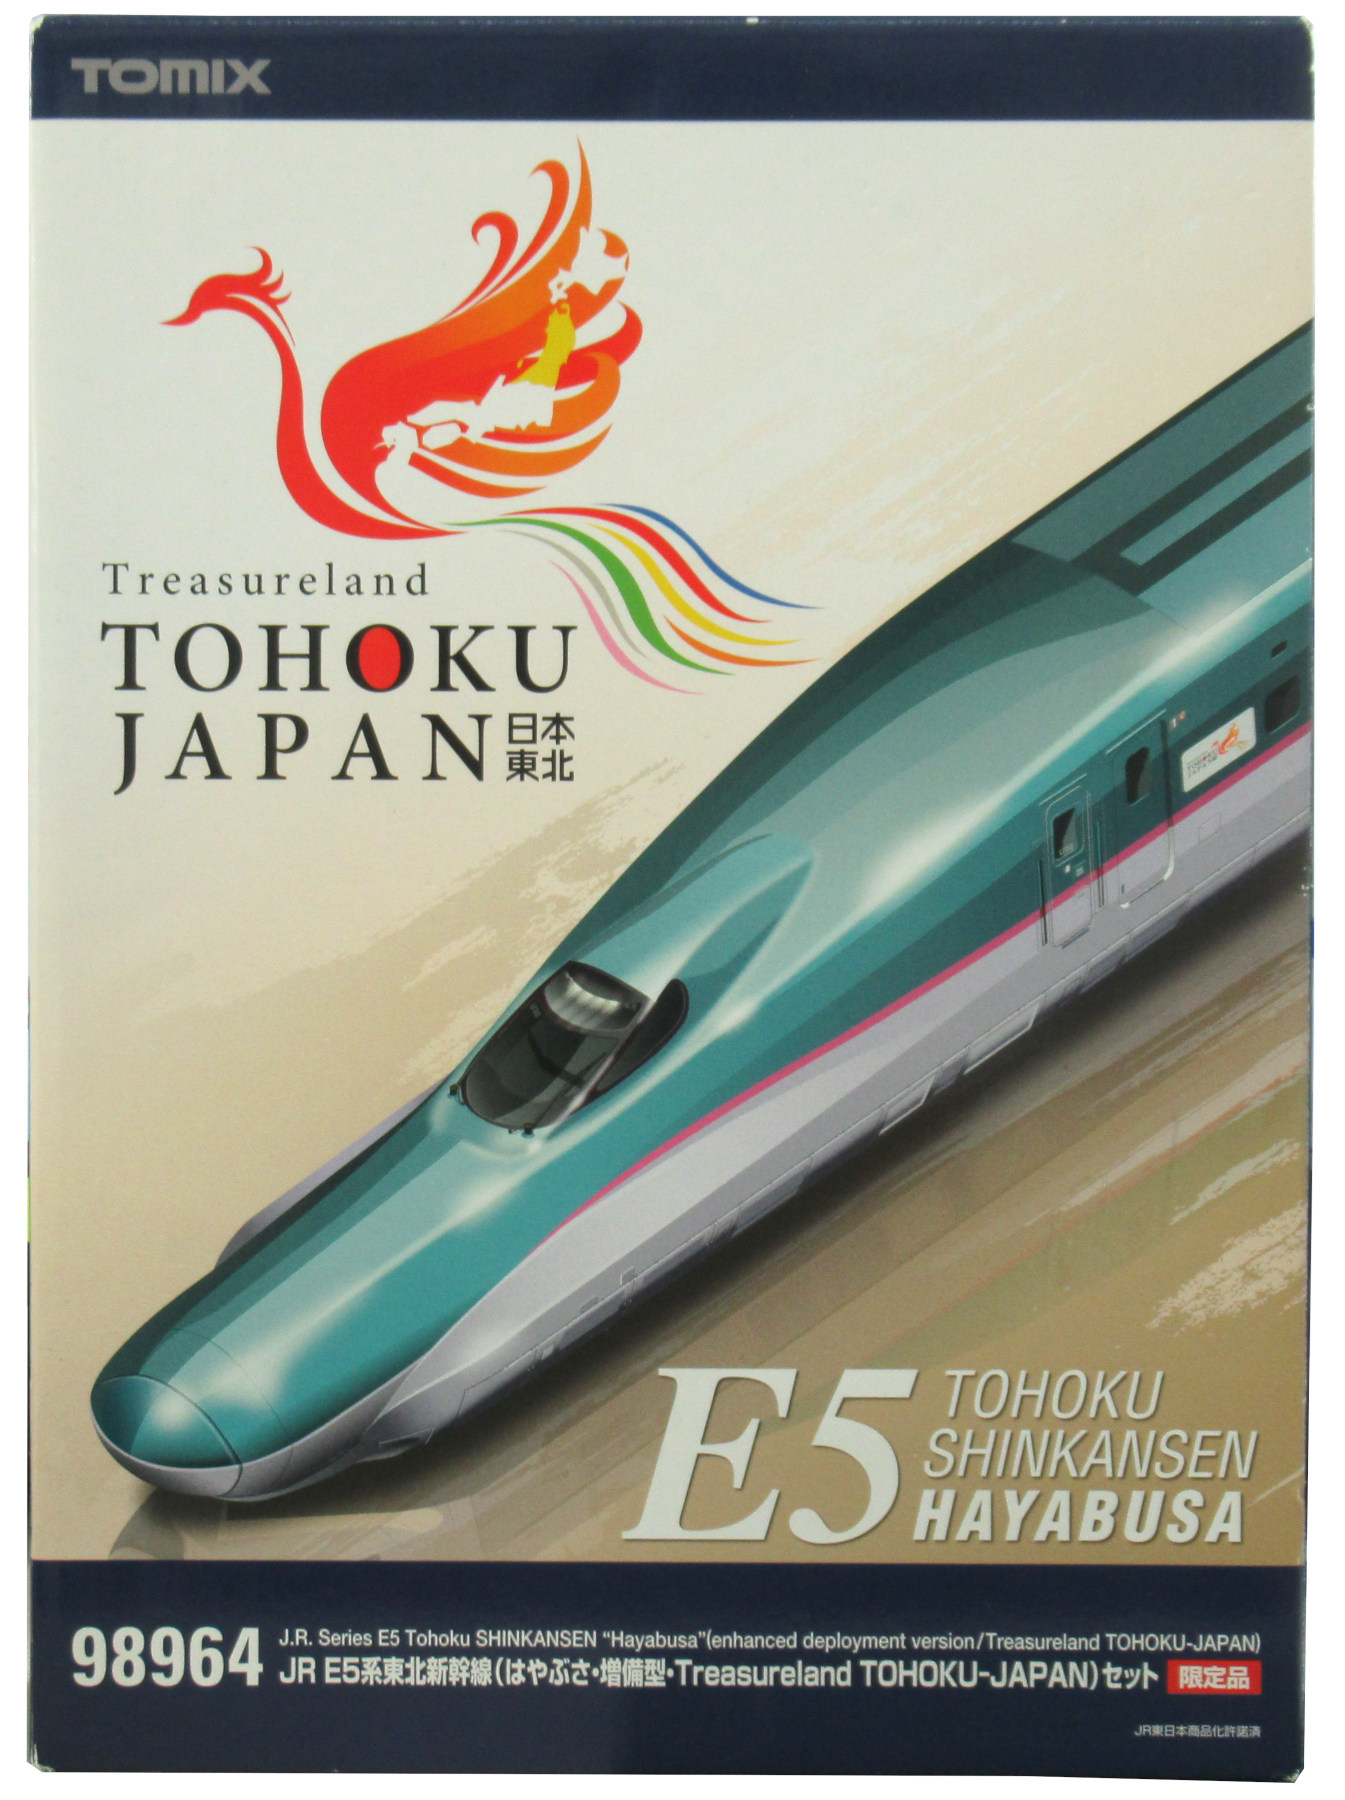 公式]鉄道模型(98964JR E5系東北新幹線 (はやぶさ増備型Treasureland